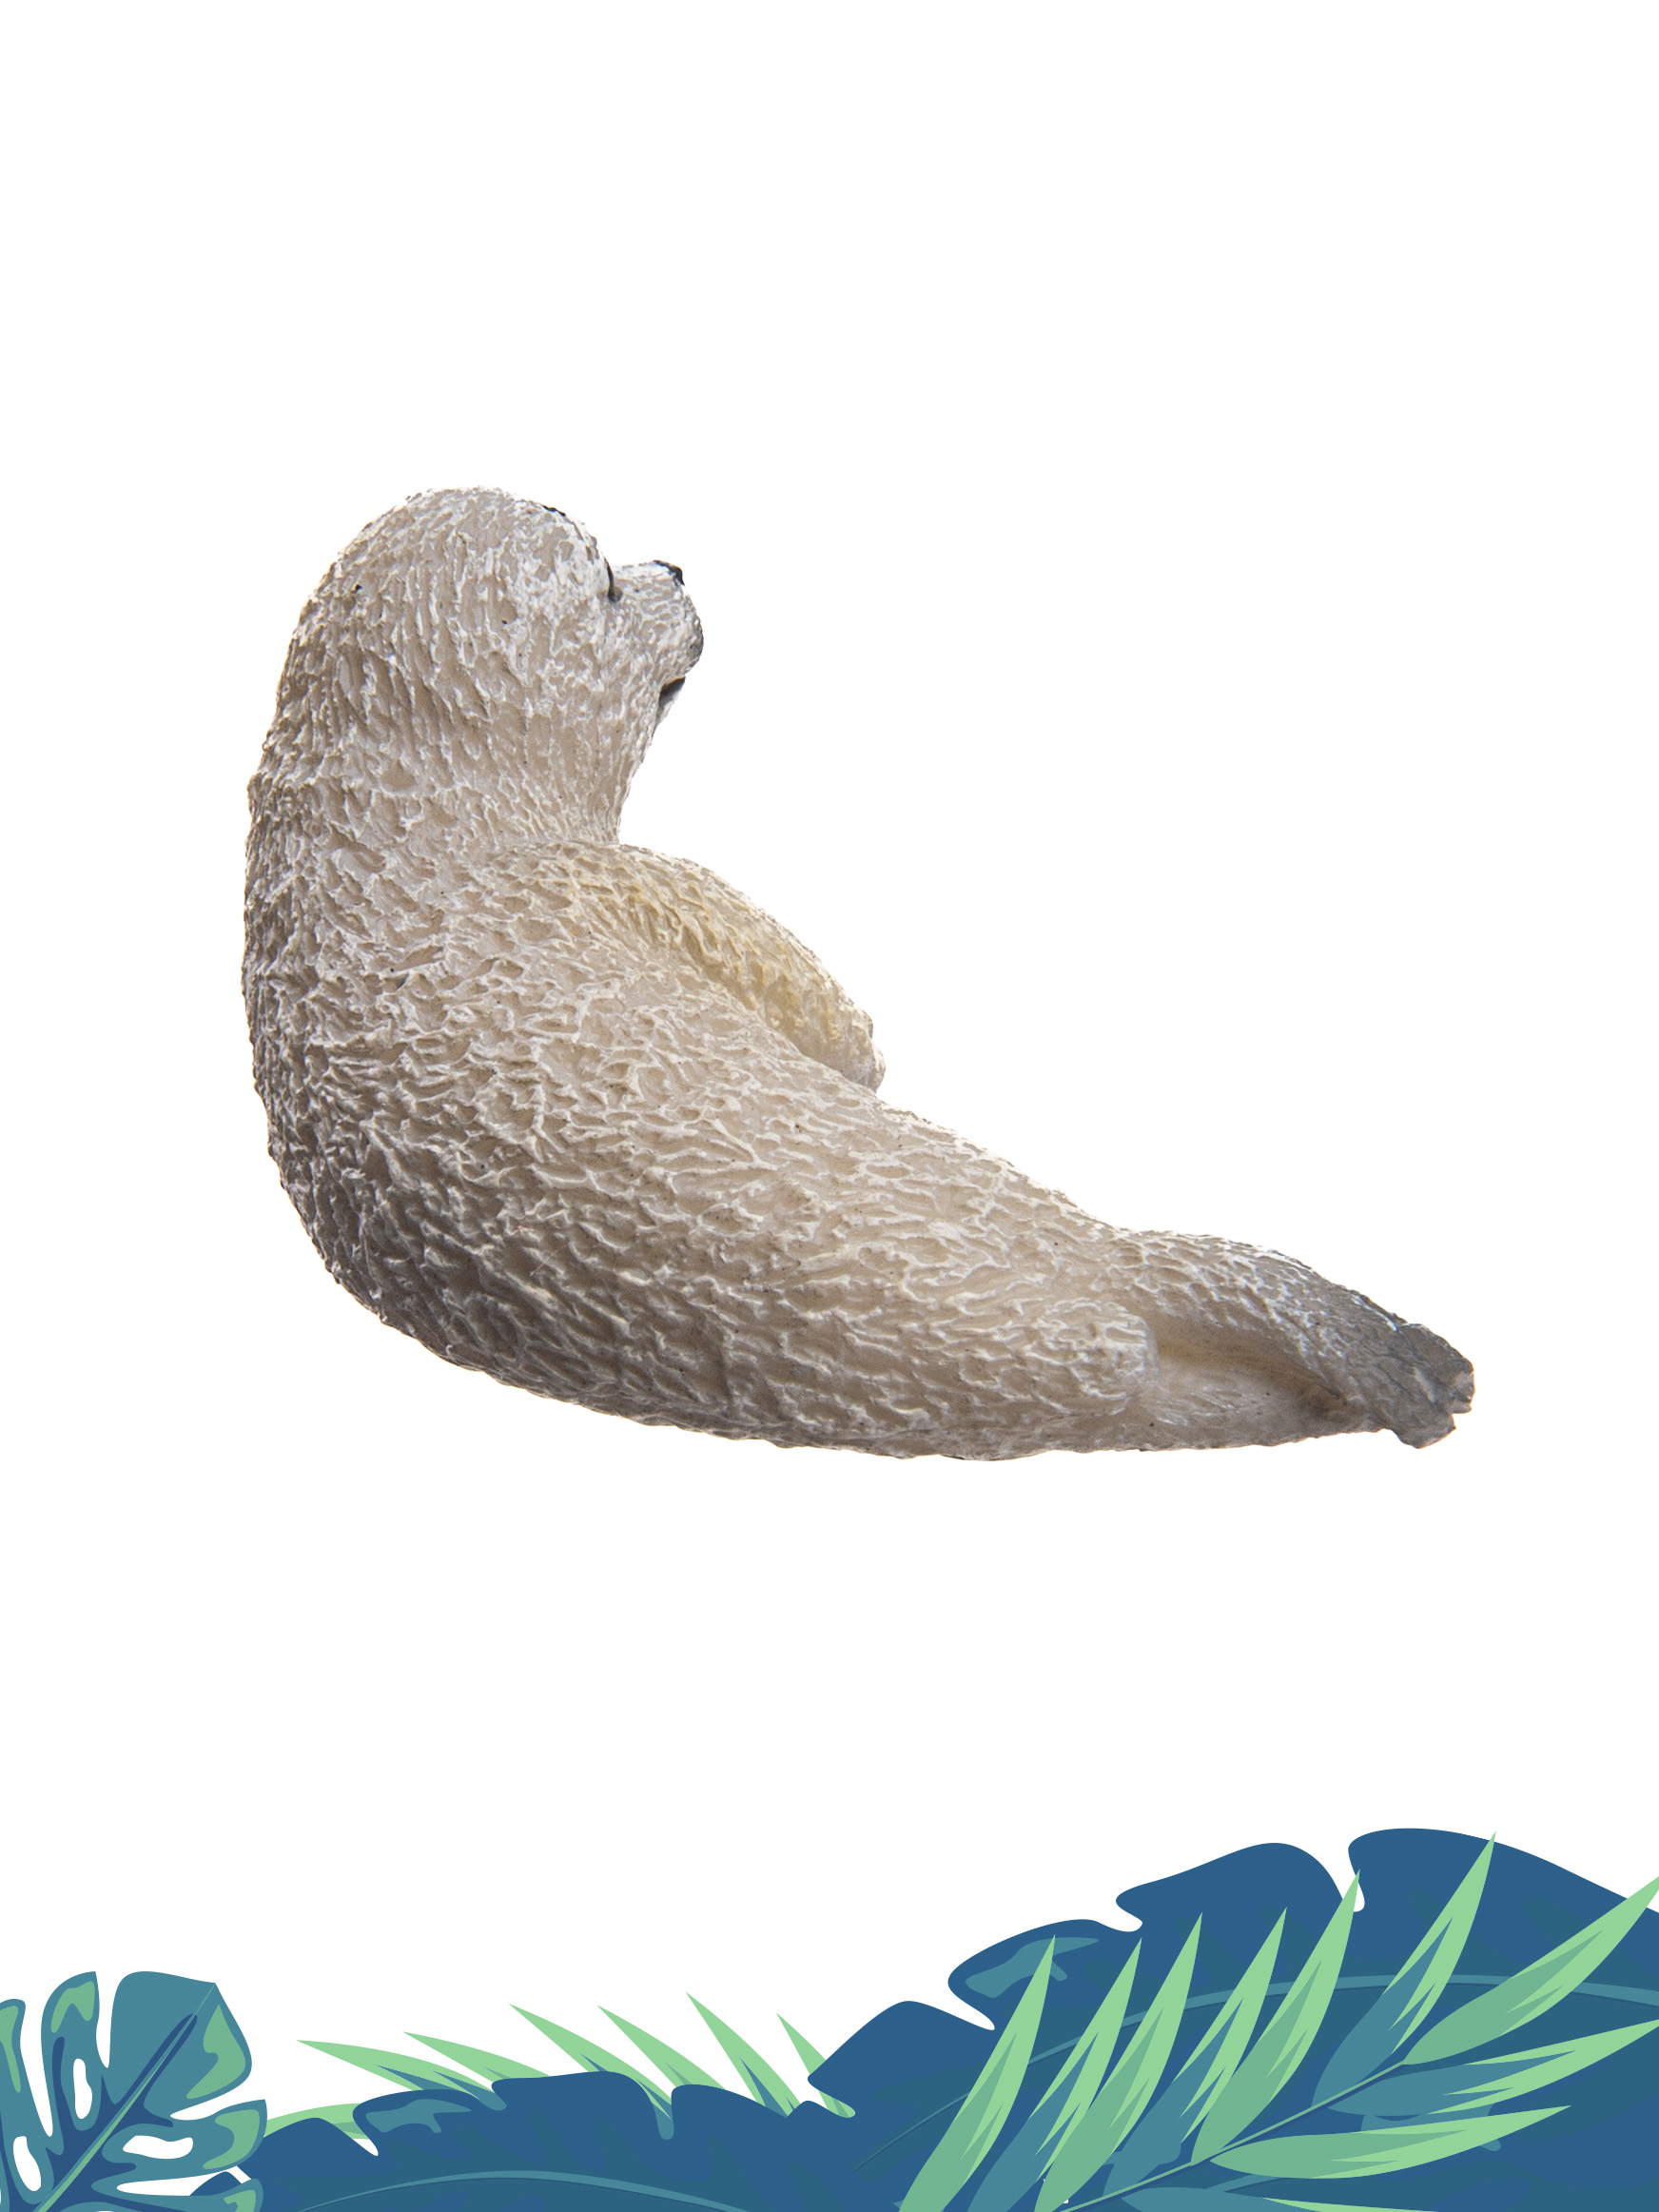 Игрушка Collecta Детёныш пятнистого тюленя фигурка животного - фото 3